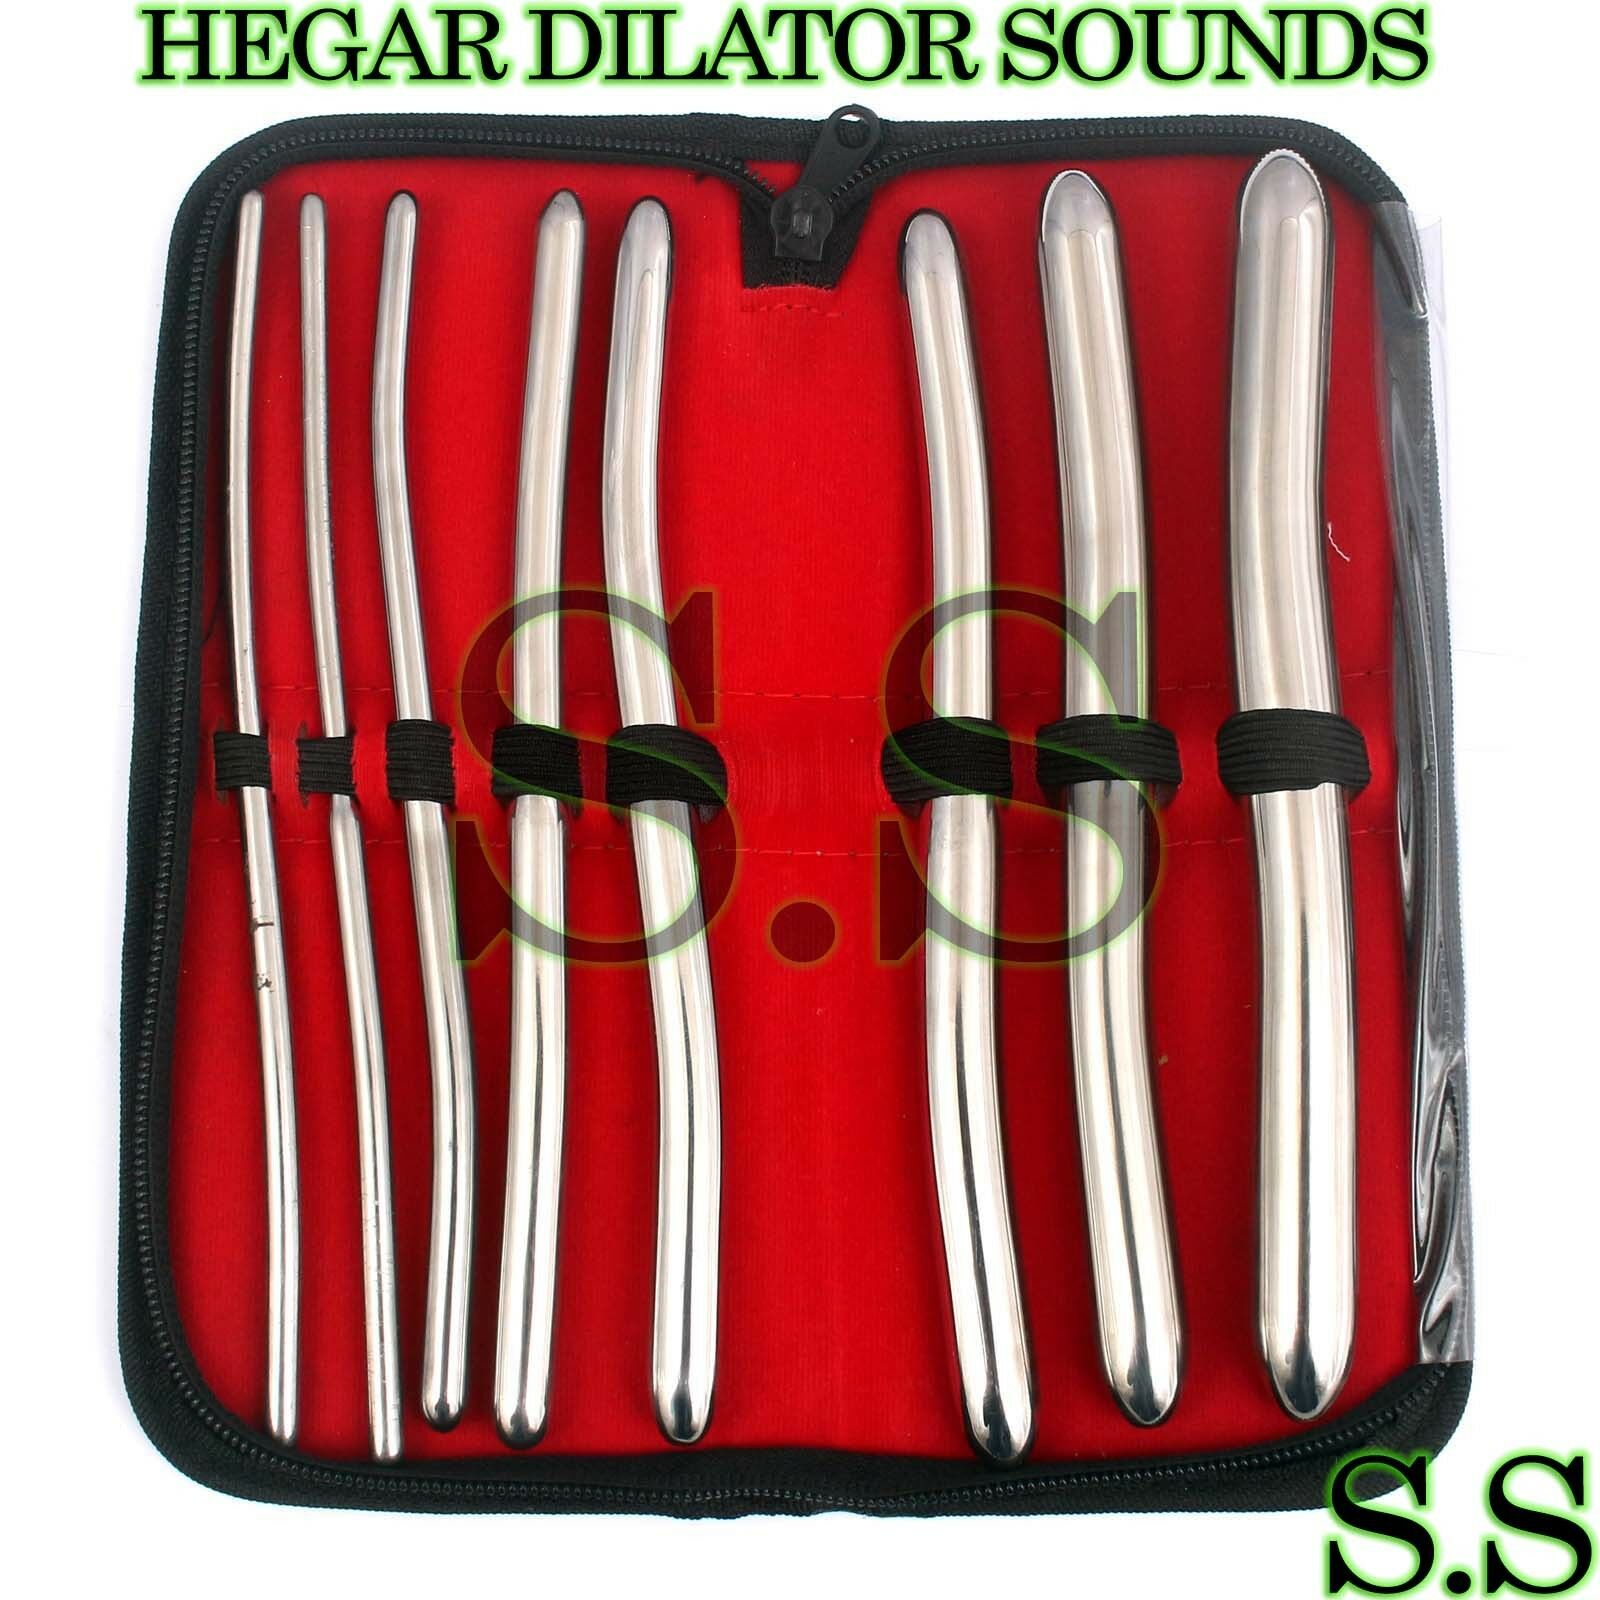 8 Hegar Dilator Sounds Set 7.5" Gyno Surgical Instruments